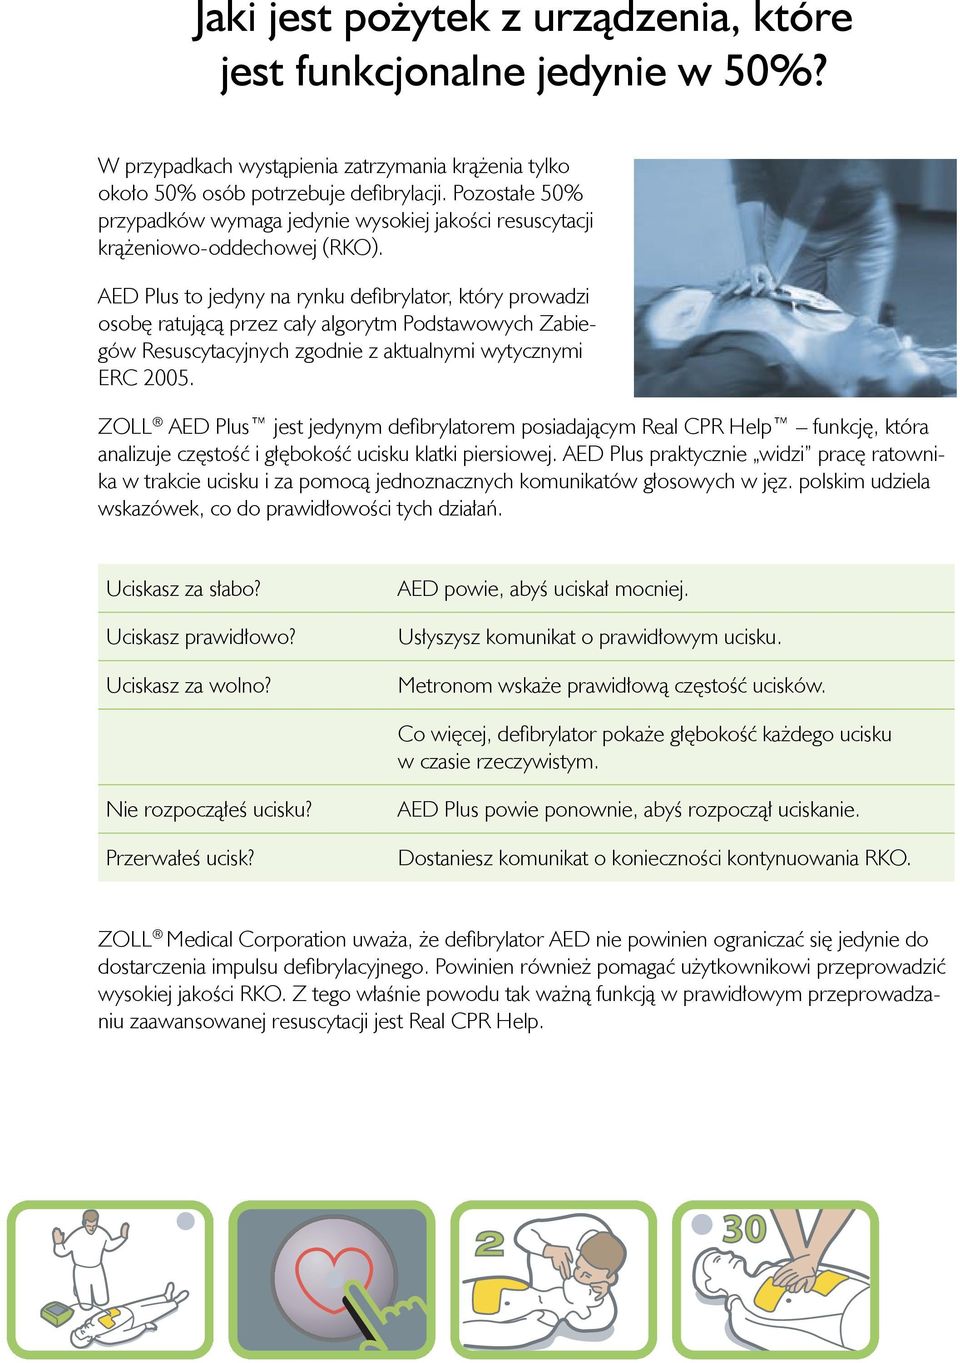 AED Plus to jedyny na rynku defibrylator, który prowadzi osobę ratującą przez cały algorytm Podstawowych Zabiegów Resuscytacyjnych zgodnie z aktualnymi wytycznymi ERC 2005.